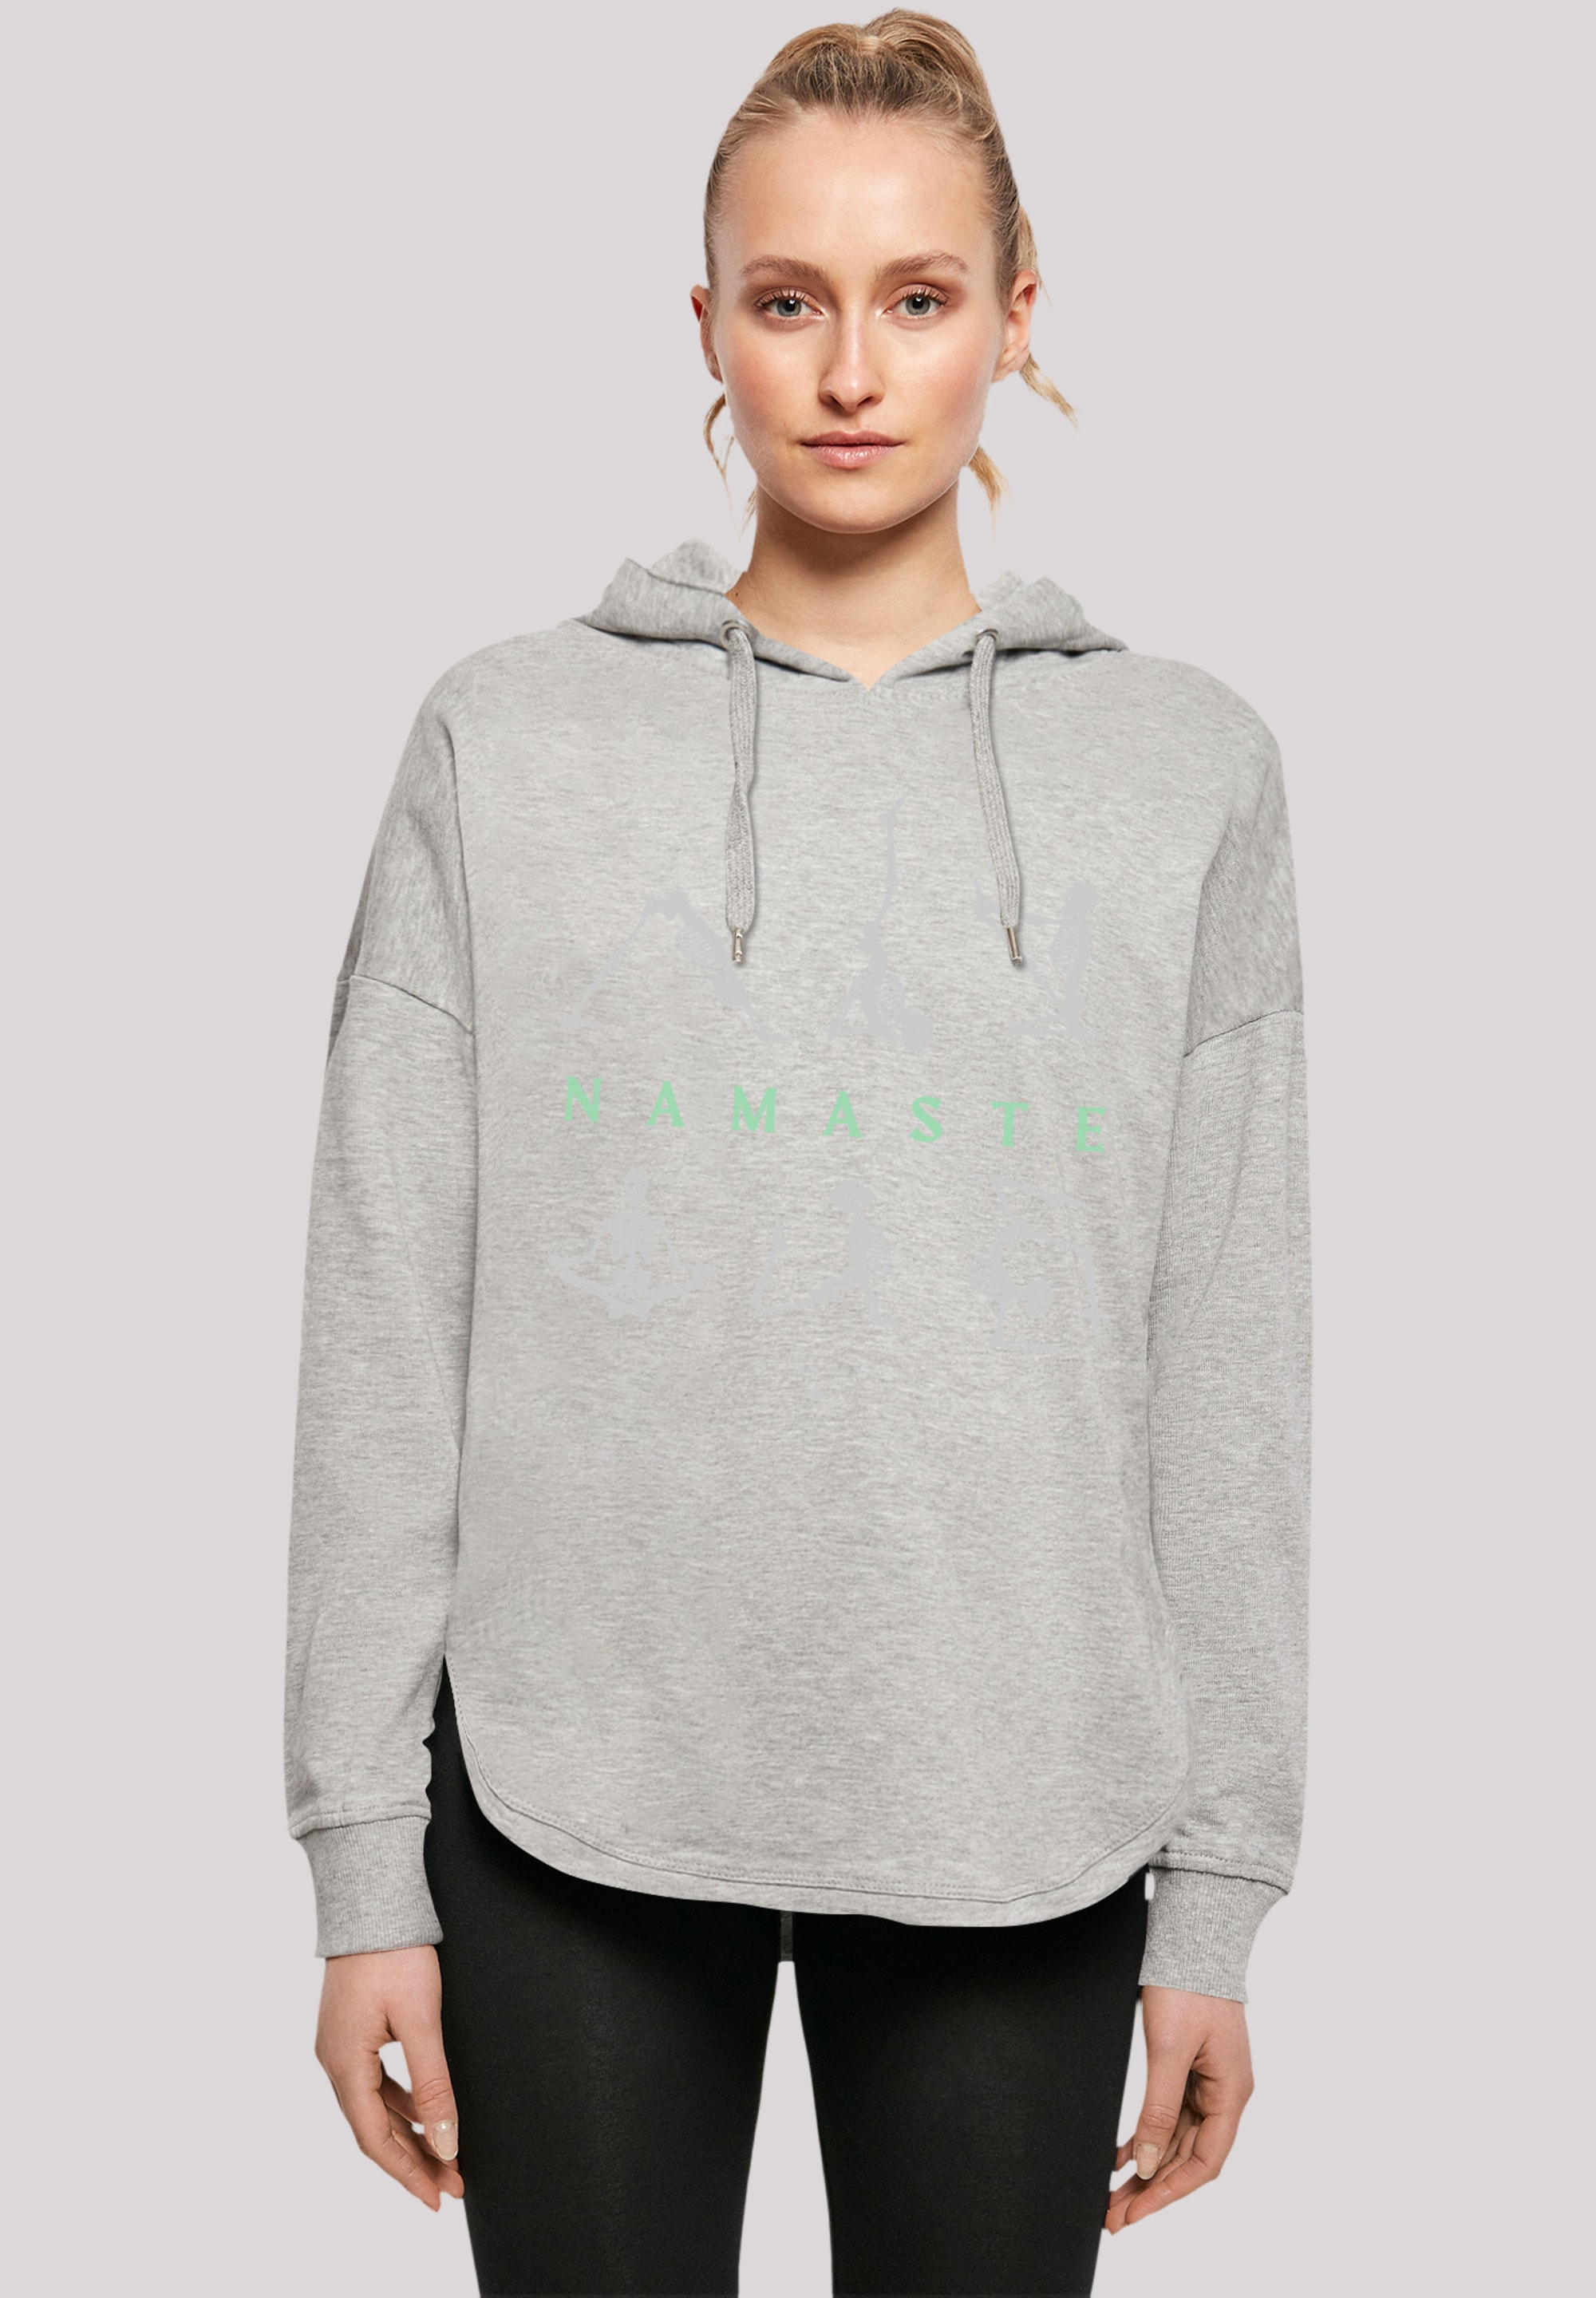 F4NT4STIC Sweatshirt »Namaste Yoga Skelett Halloween«, Print für bestellen  | BAUR